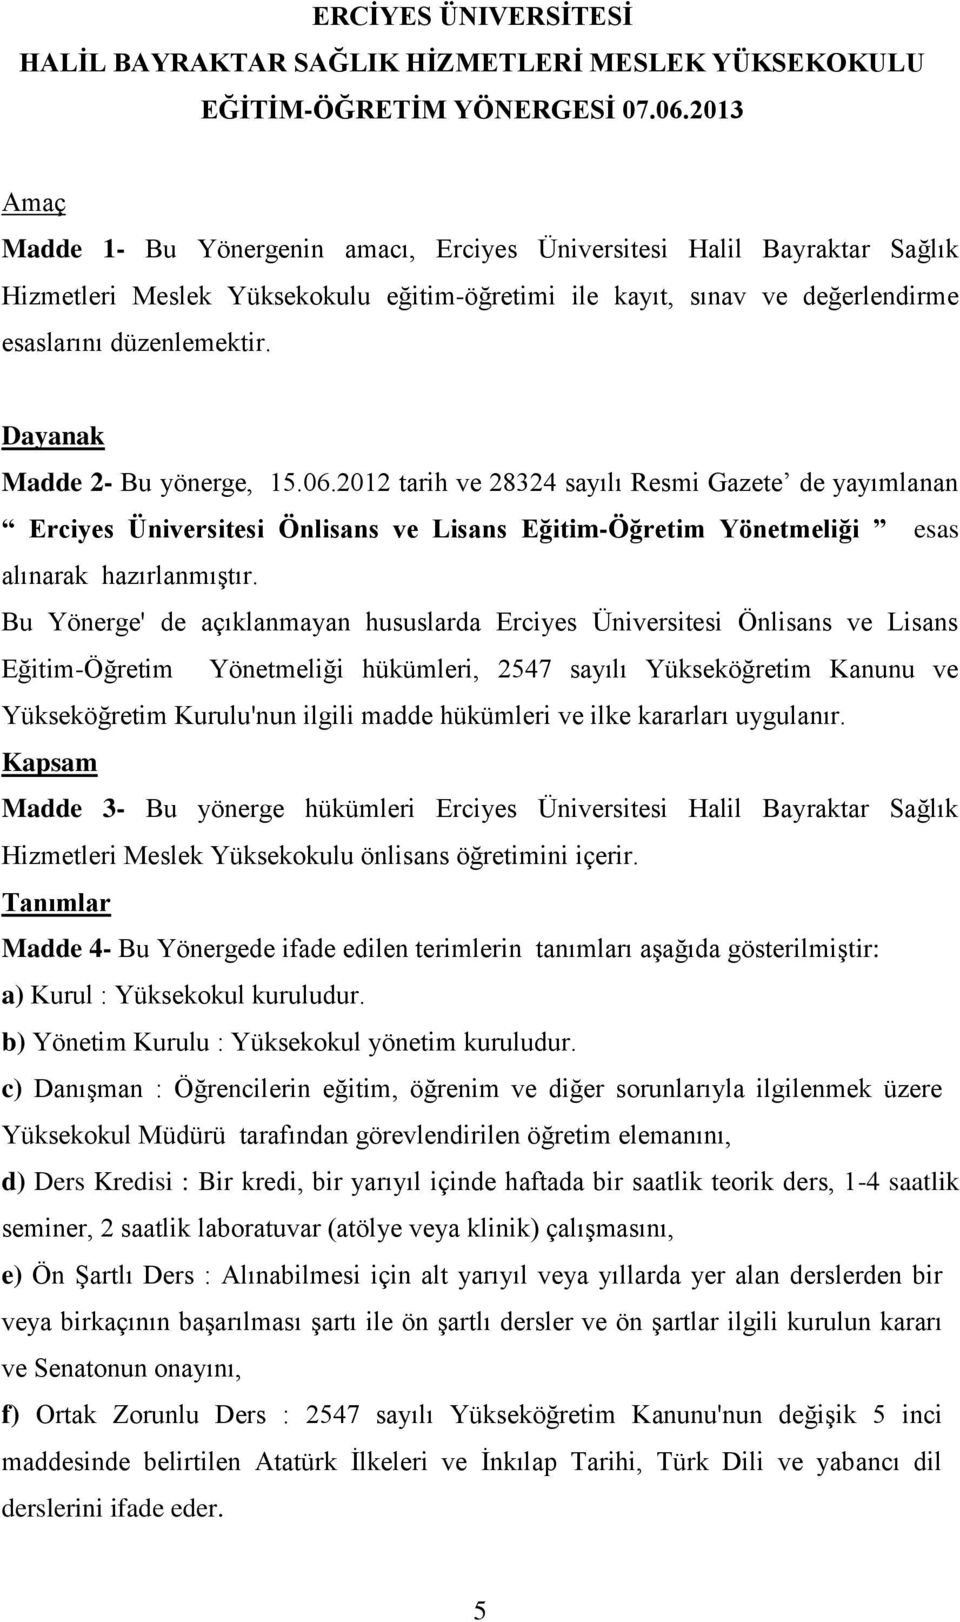 Dayanak Madde 2- Bu yönerge, 15.06.2012 tarih ve 28324 sayılı Resmi Gazete de yayımlanan Erciyes Üniversitesi Önlisans ve Lisans Eğitim-Öğretim Yönetmeliği esas alınarak hazırlanmıştır.